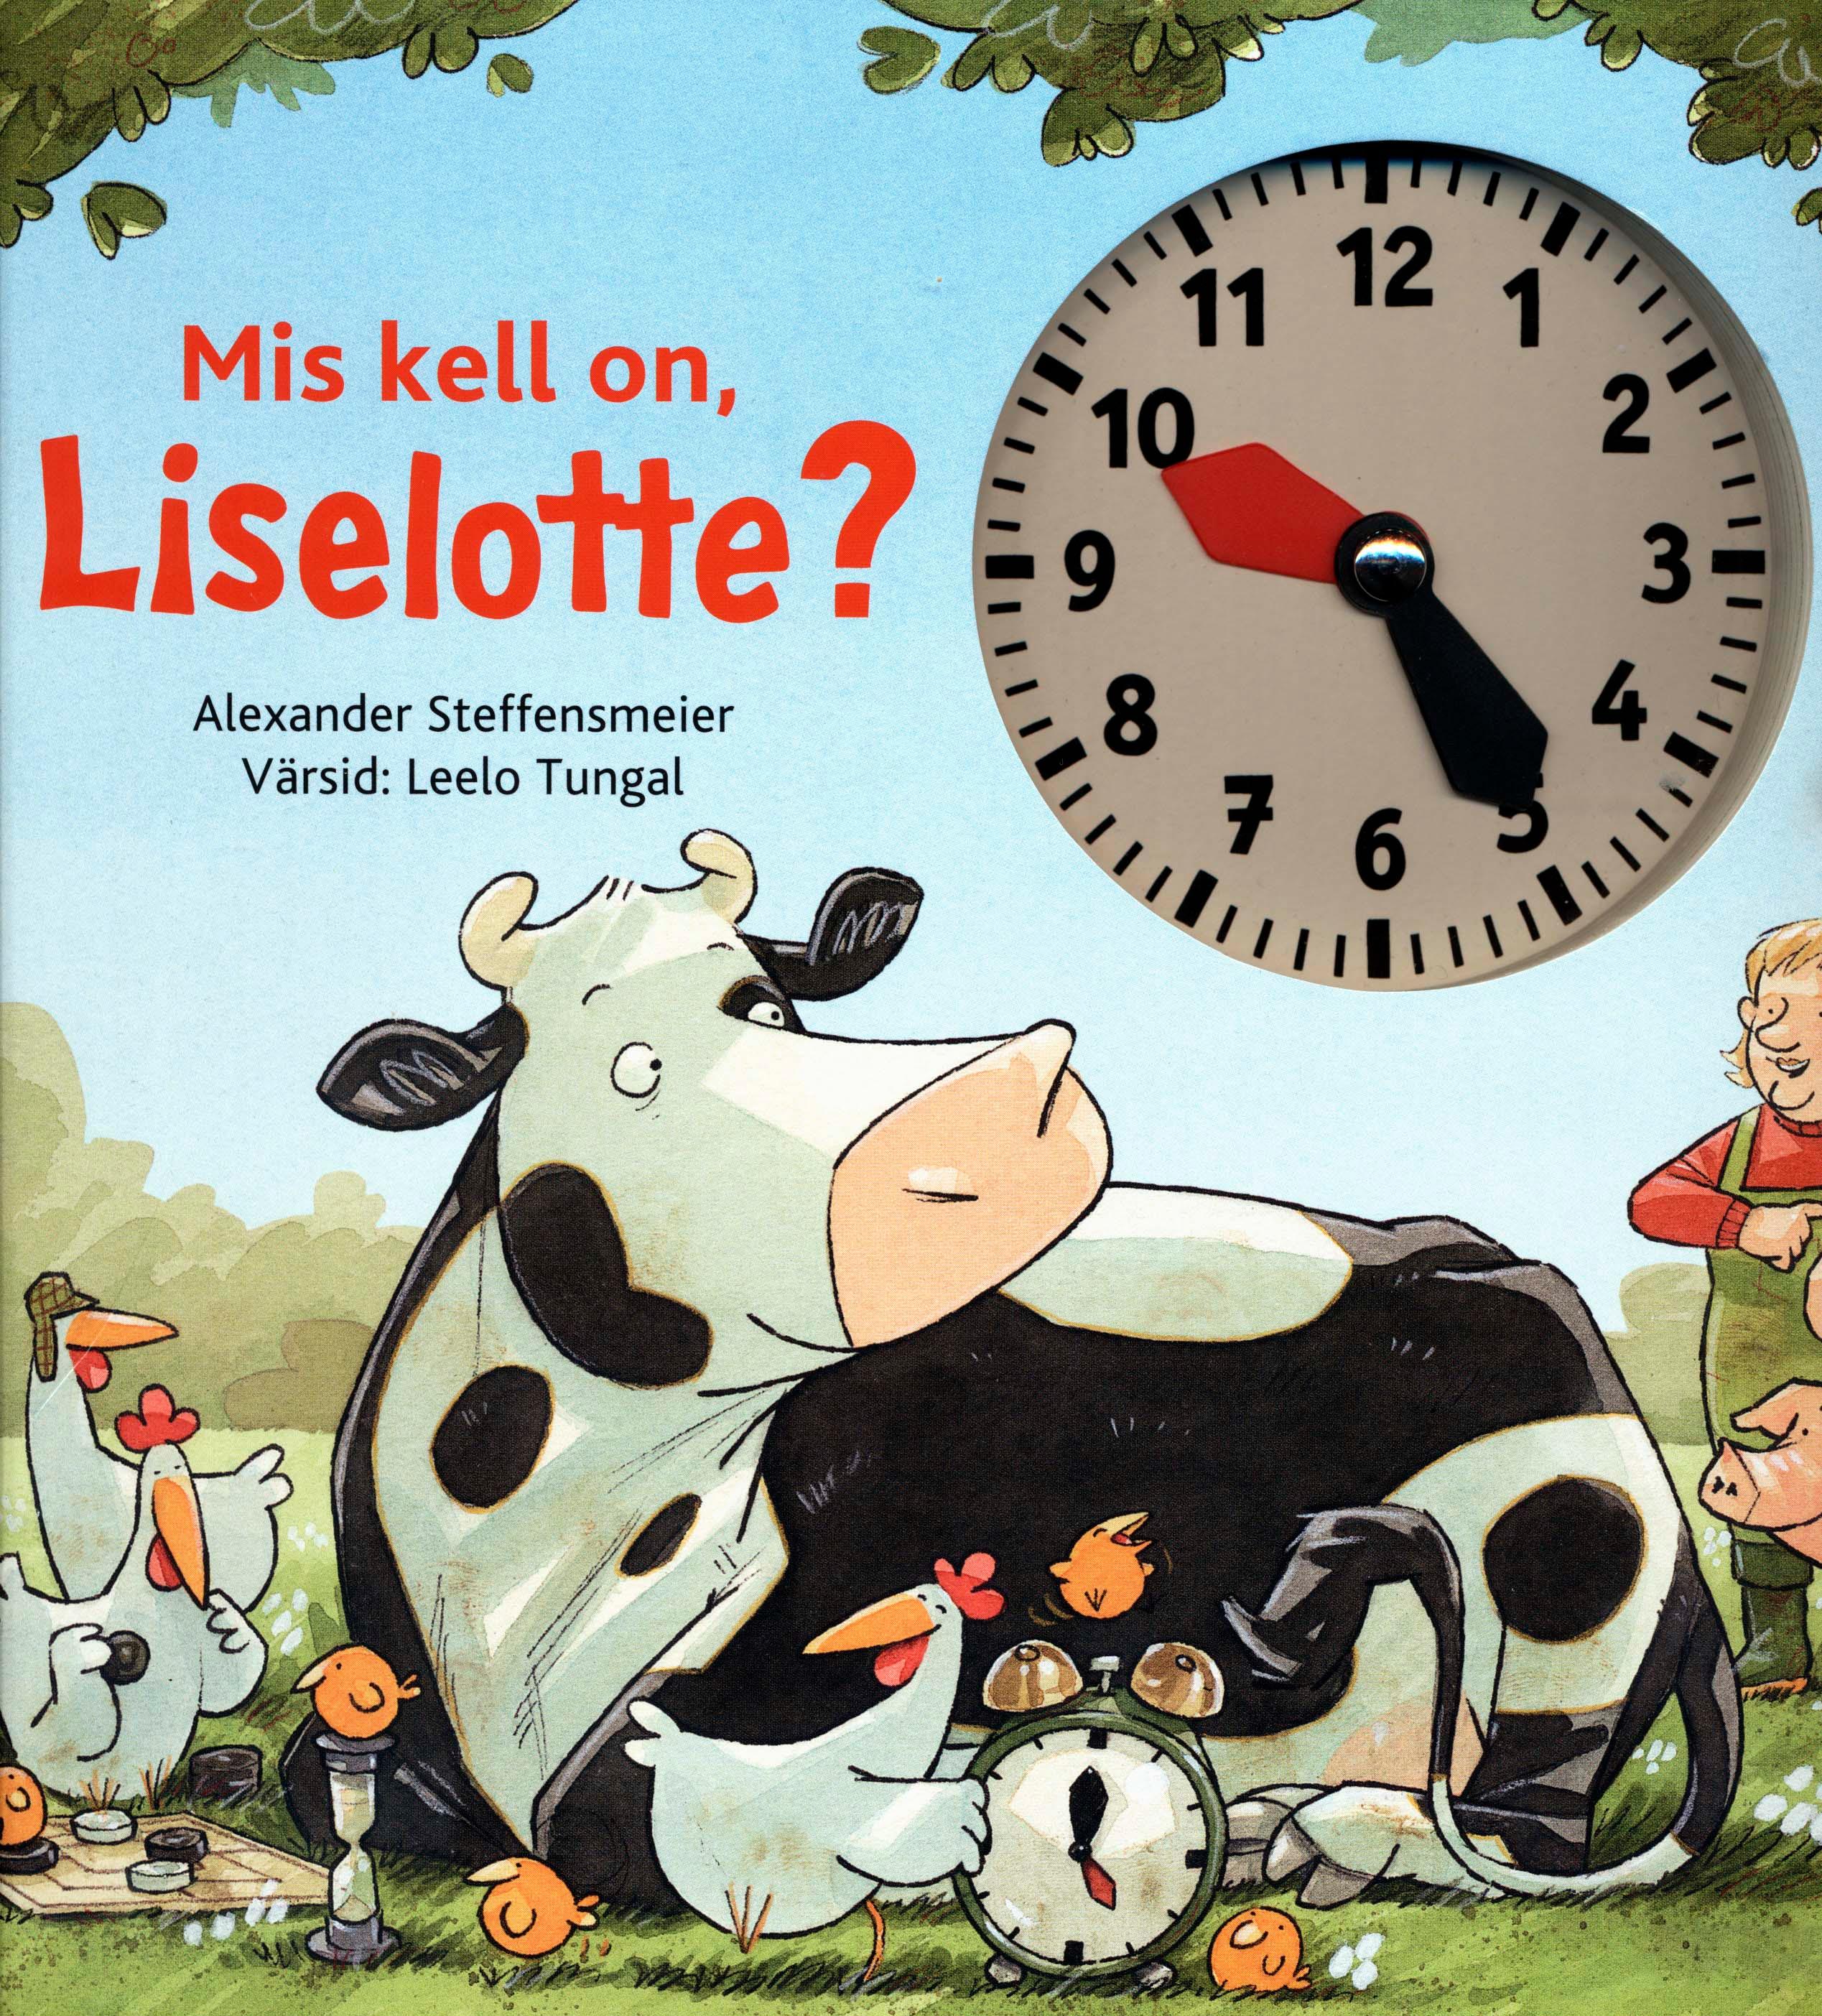 Mis kell on, Liselotte?